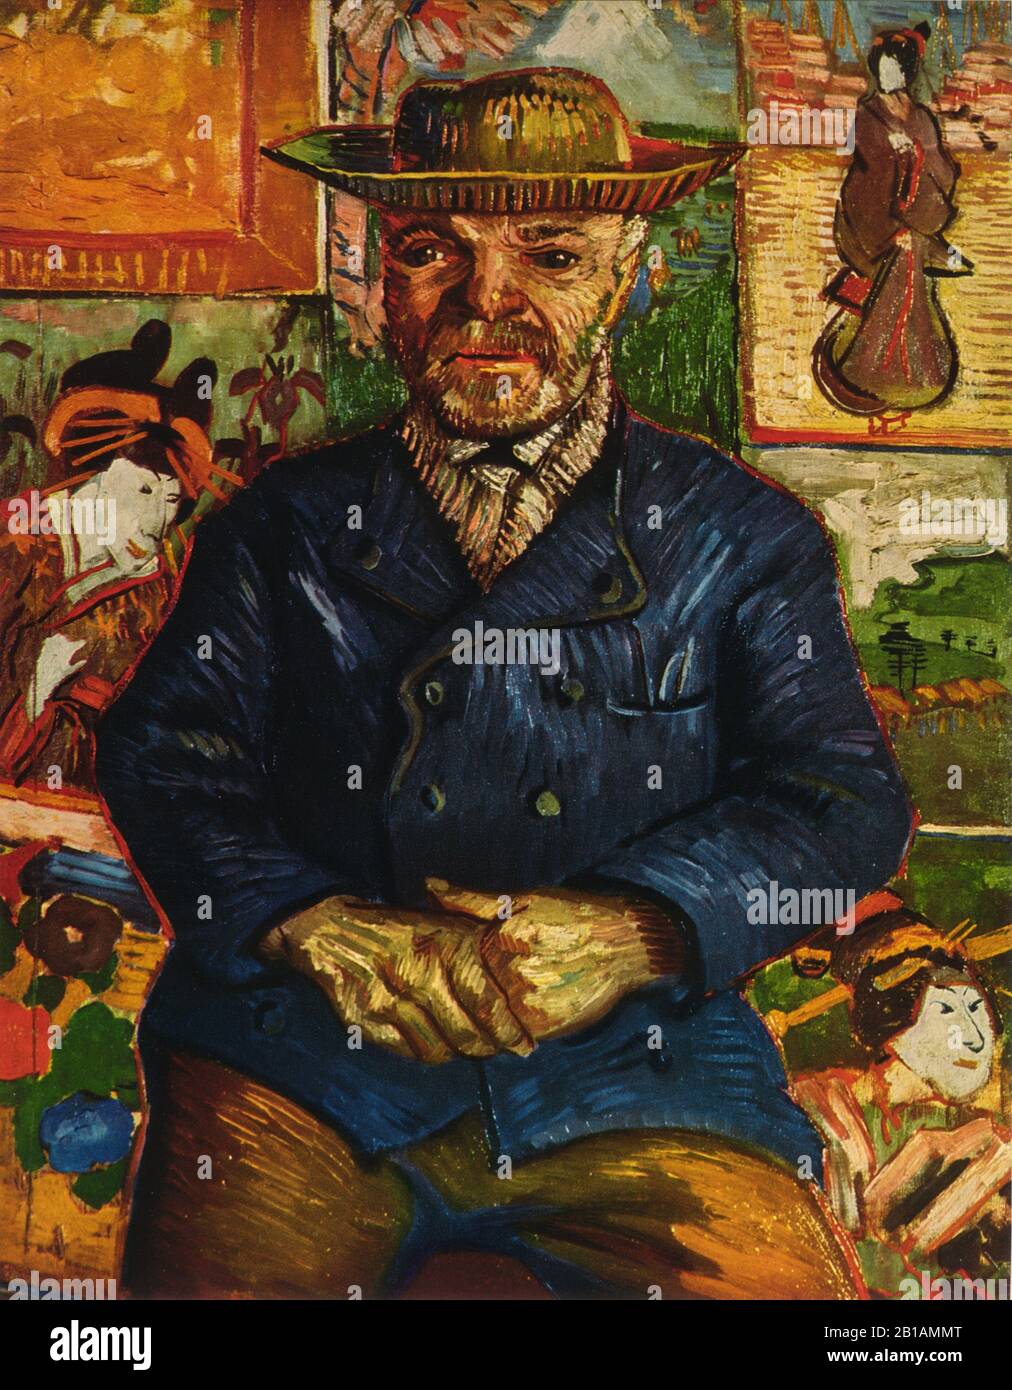 Pere Tanguy, Gemälde von Vincent van Gogh, mit Sehr hoher Auflösung und hoher Bildqualität Stockfoto